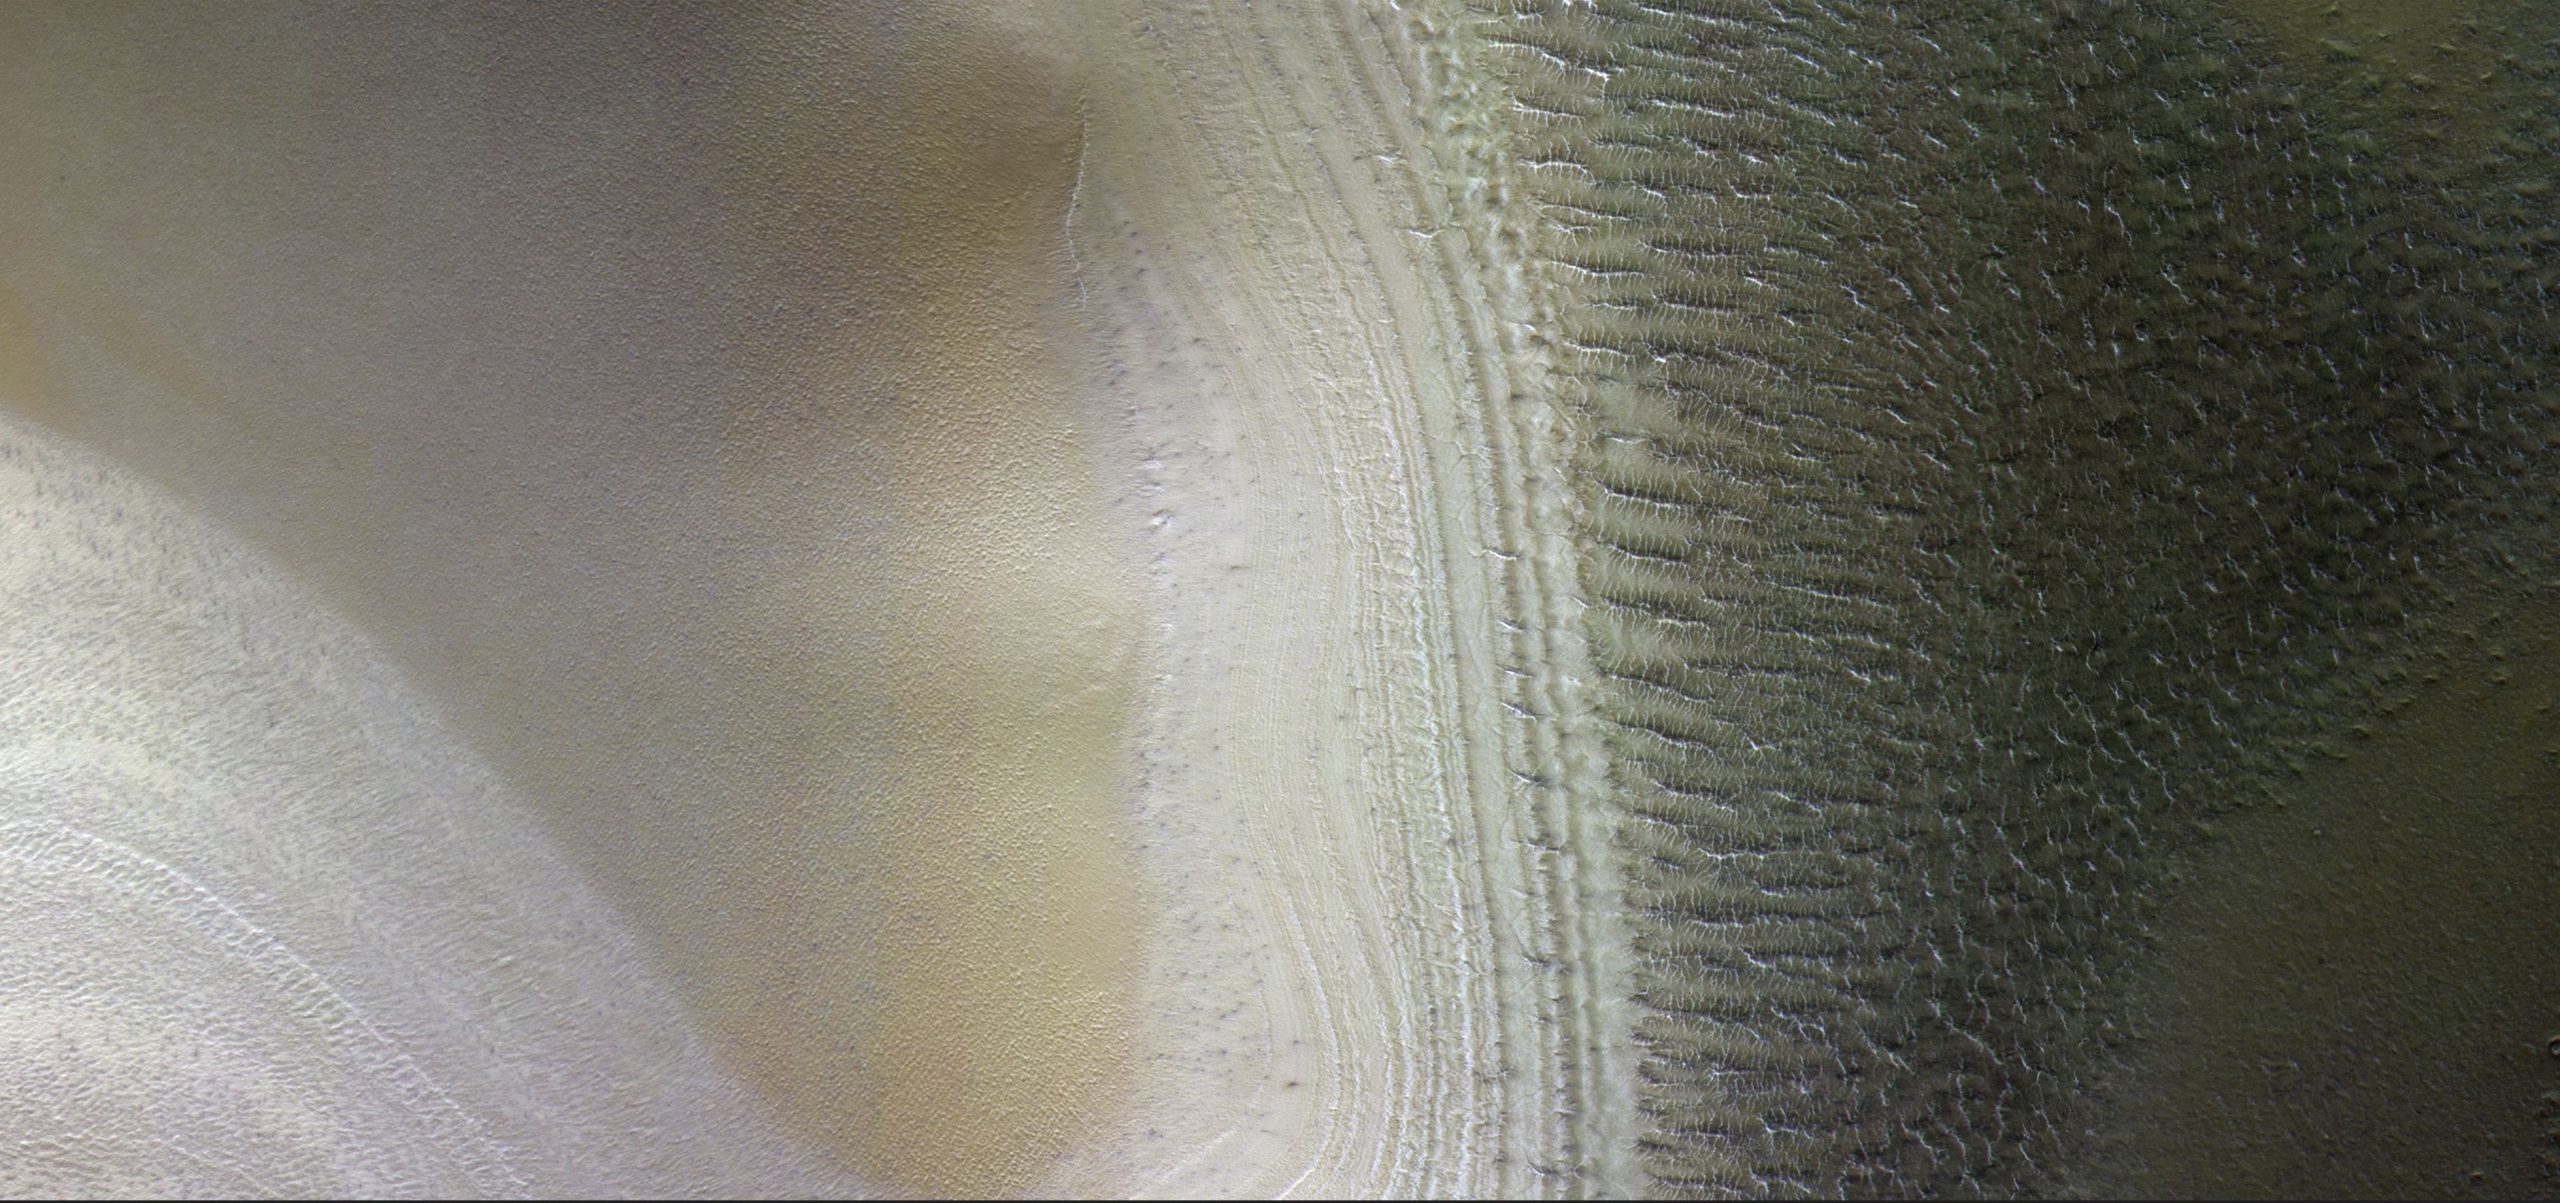 Еще одно доказательство существования соленой воды на Марсе